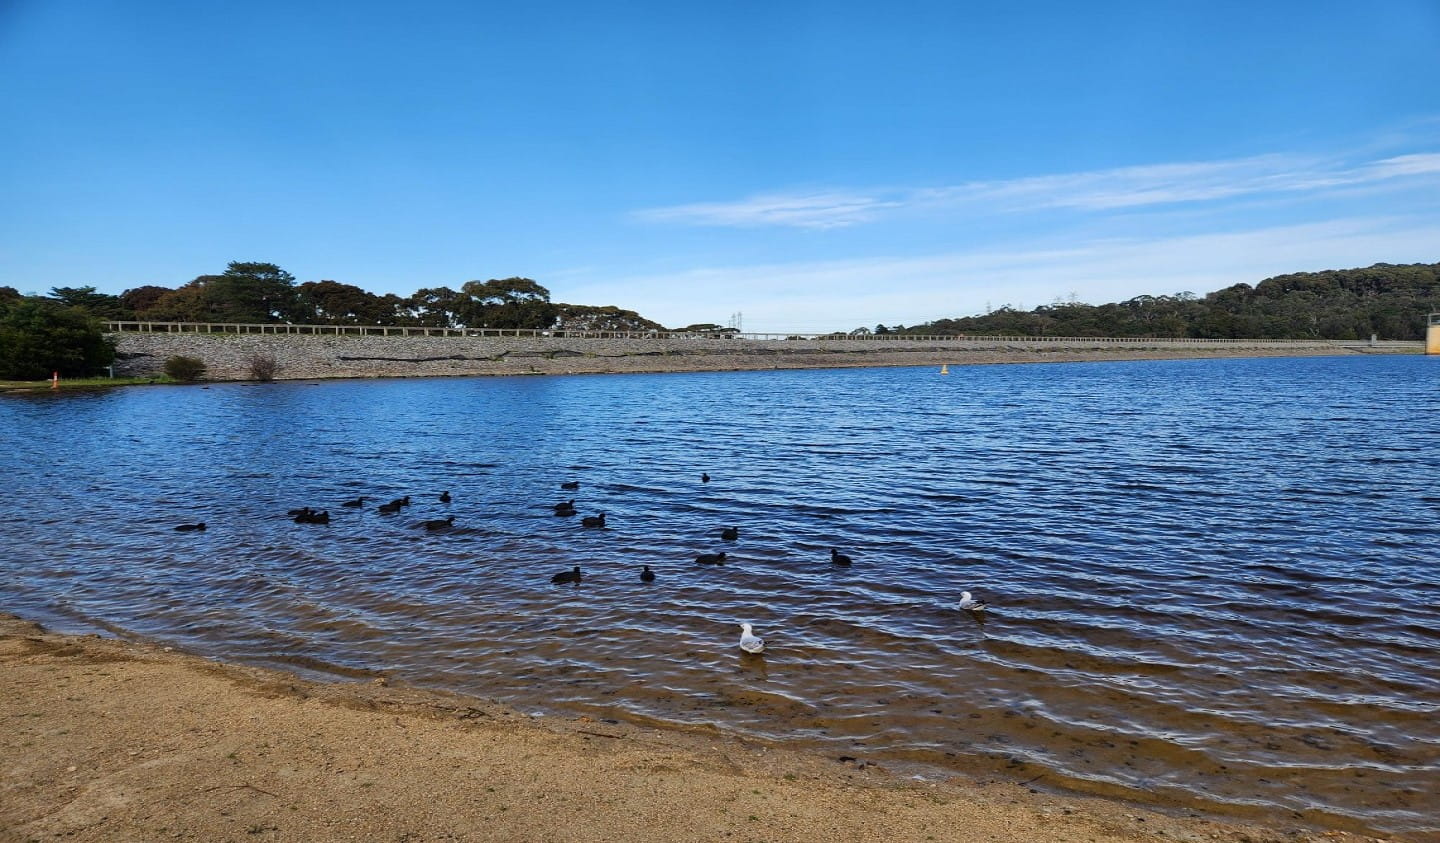 Ducks swimming in Lysterfield lake